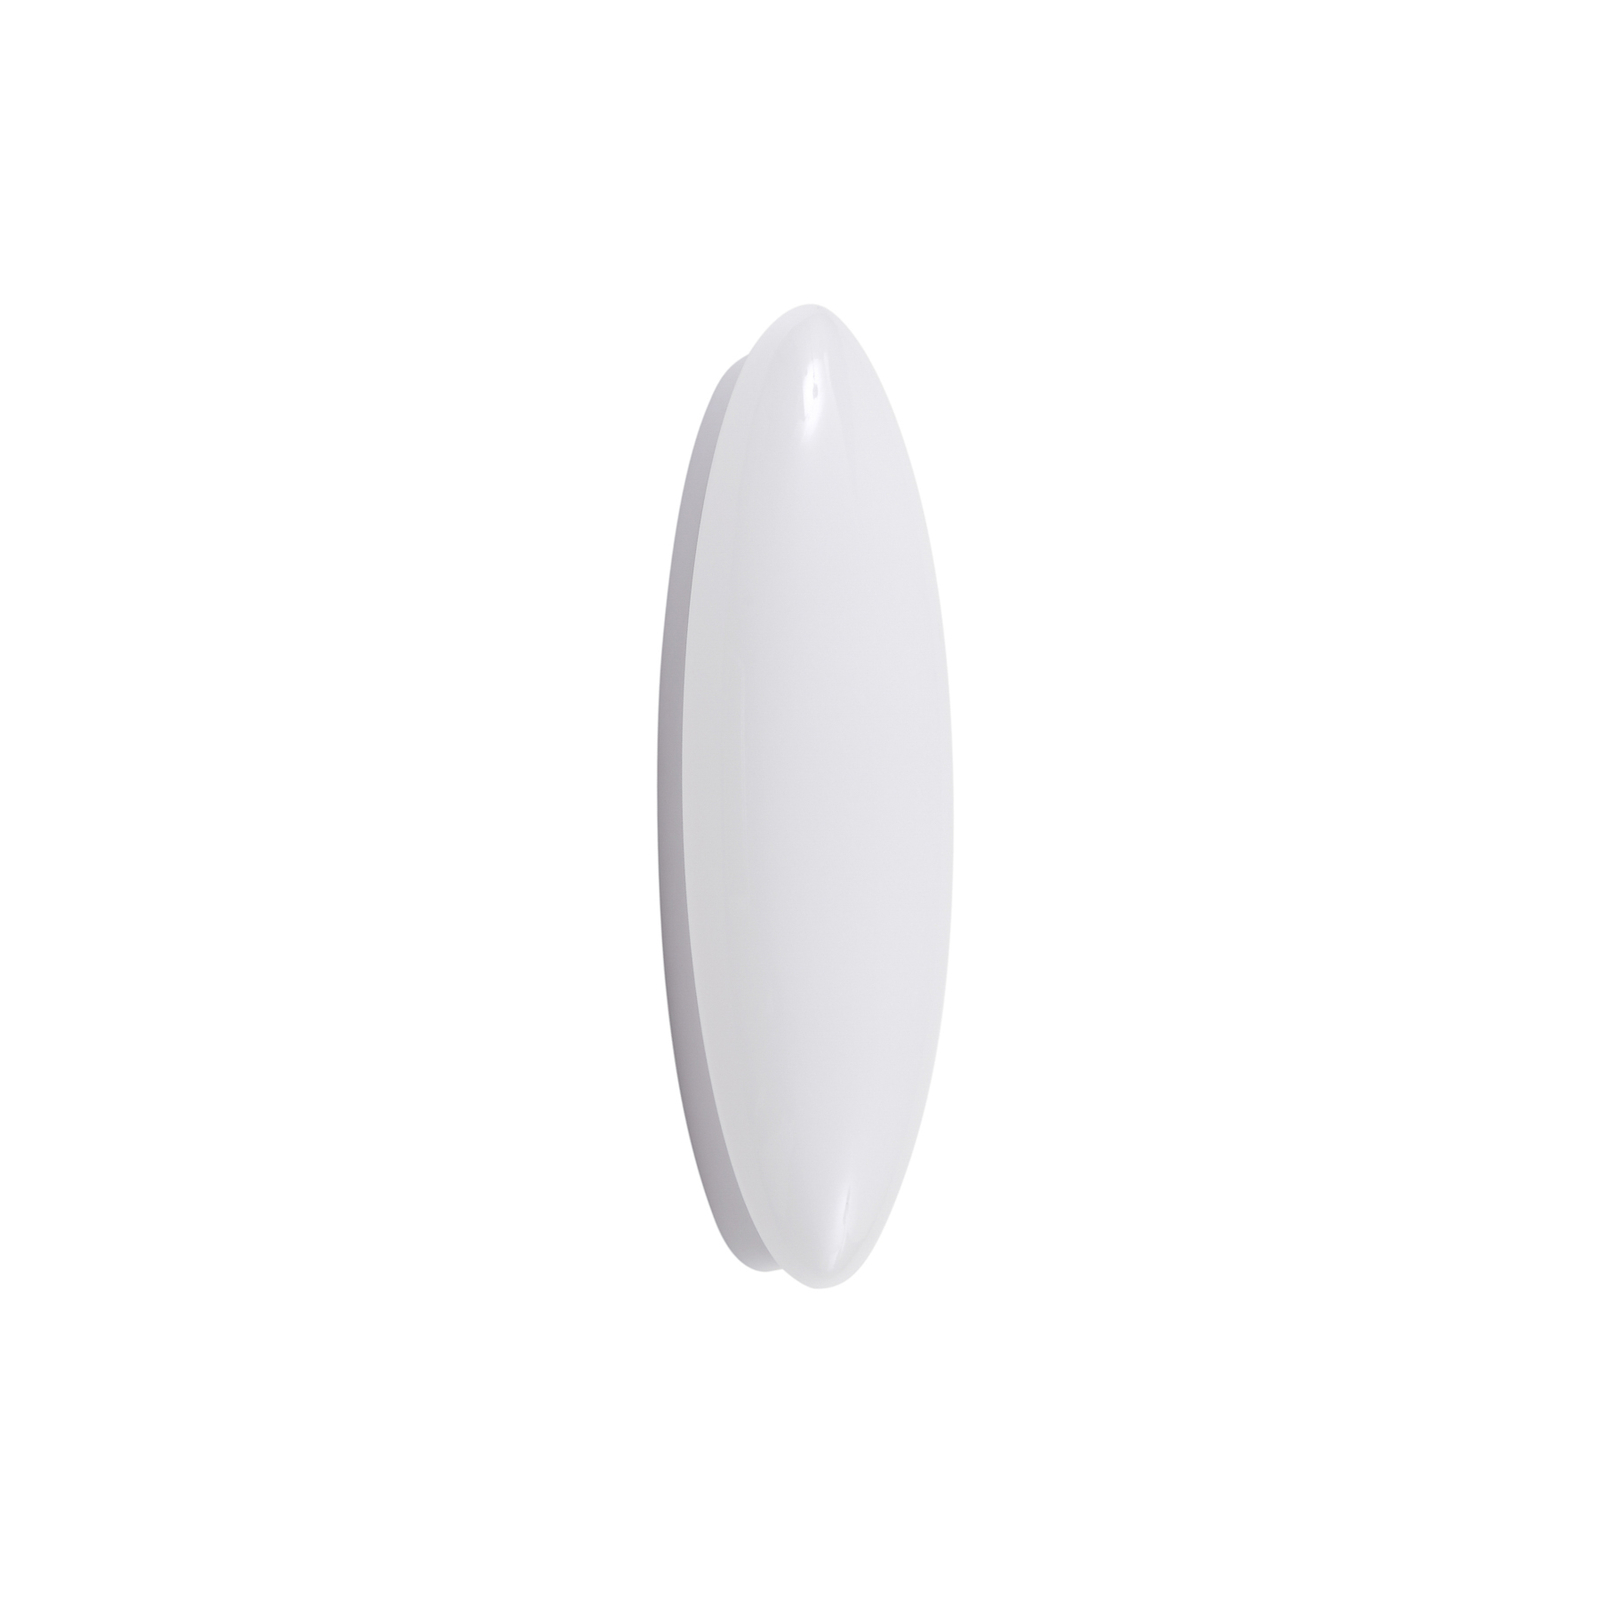 Lucande kinkiet LED Leihlo, biały, tworzywo sztuczne, wysokość 8 cm